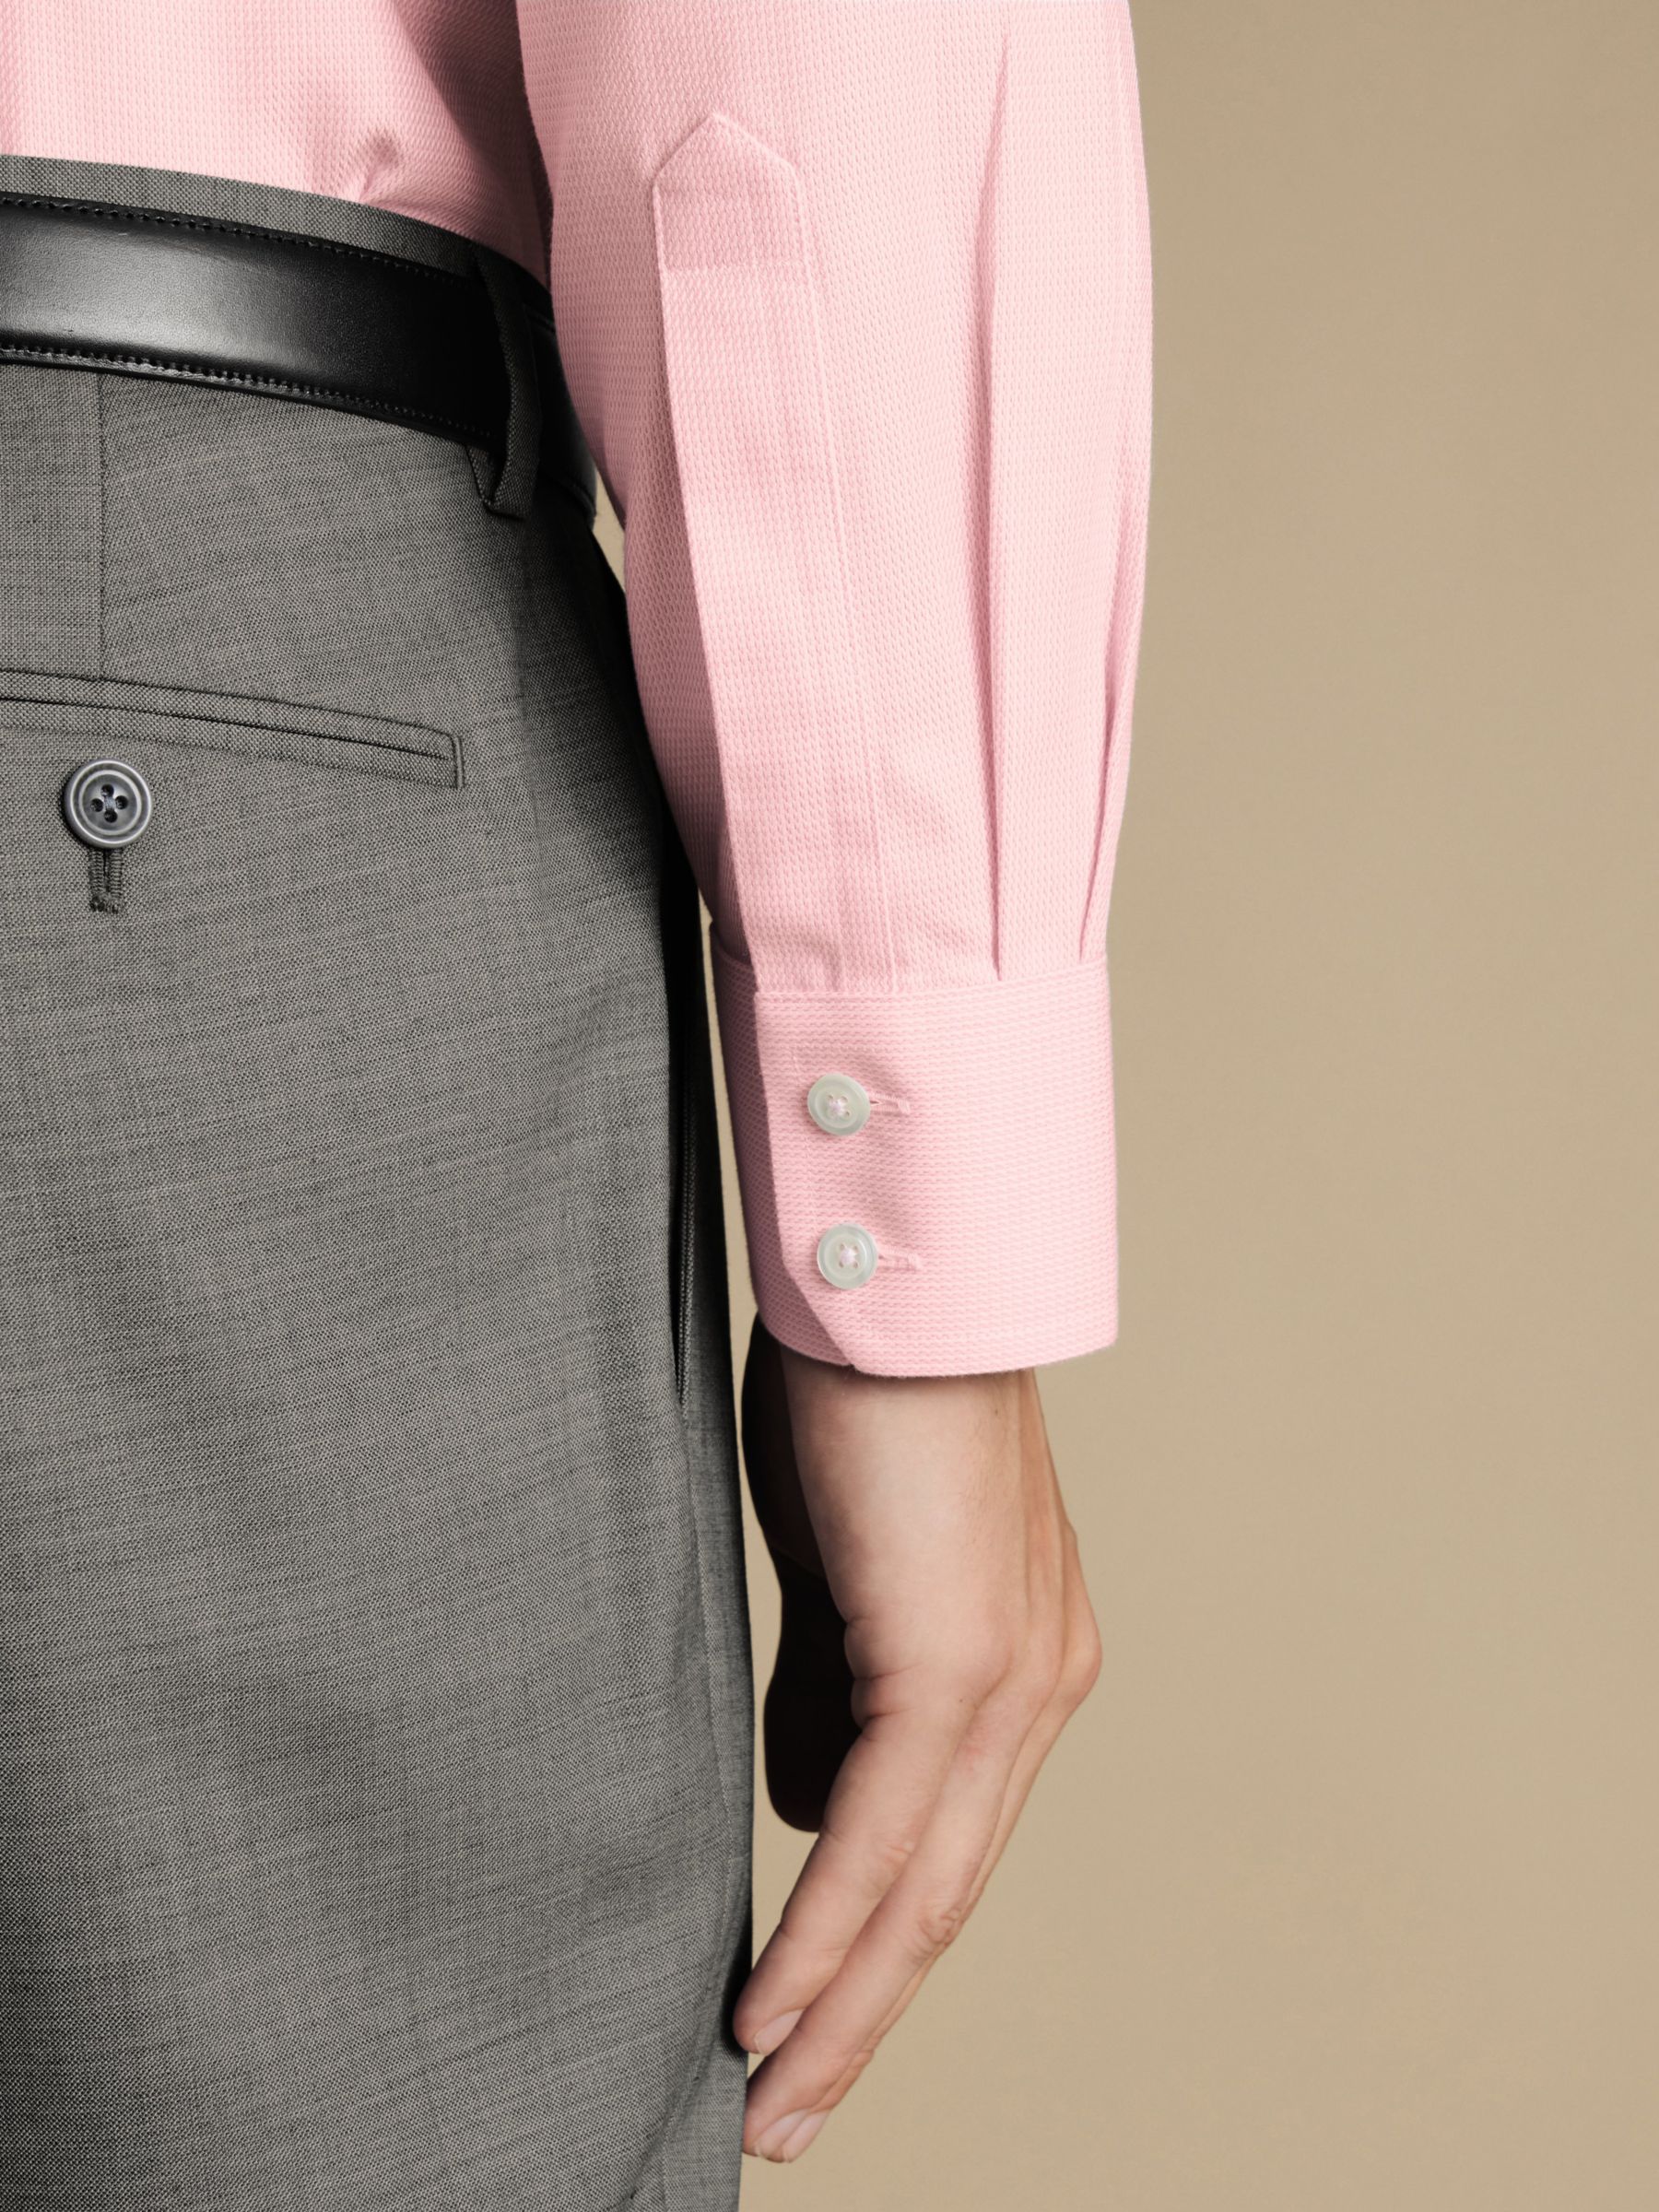 Charles Tyrwhitt Non-Iron Mayfair Textured Dobby Weave Shirt, Pink, 14.5